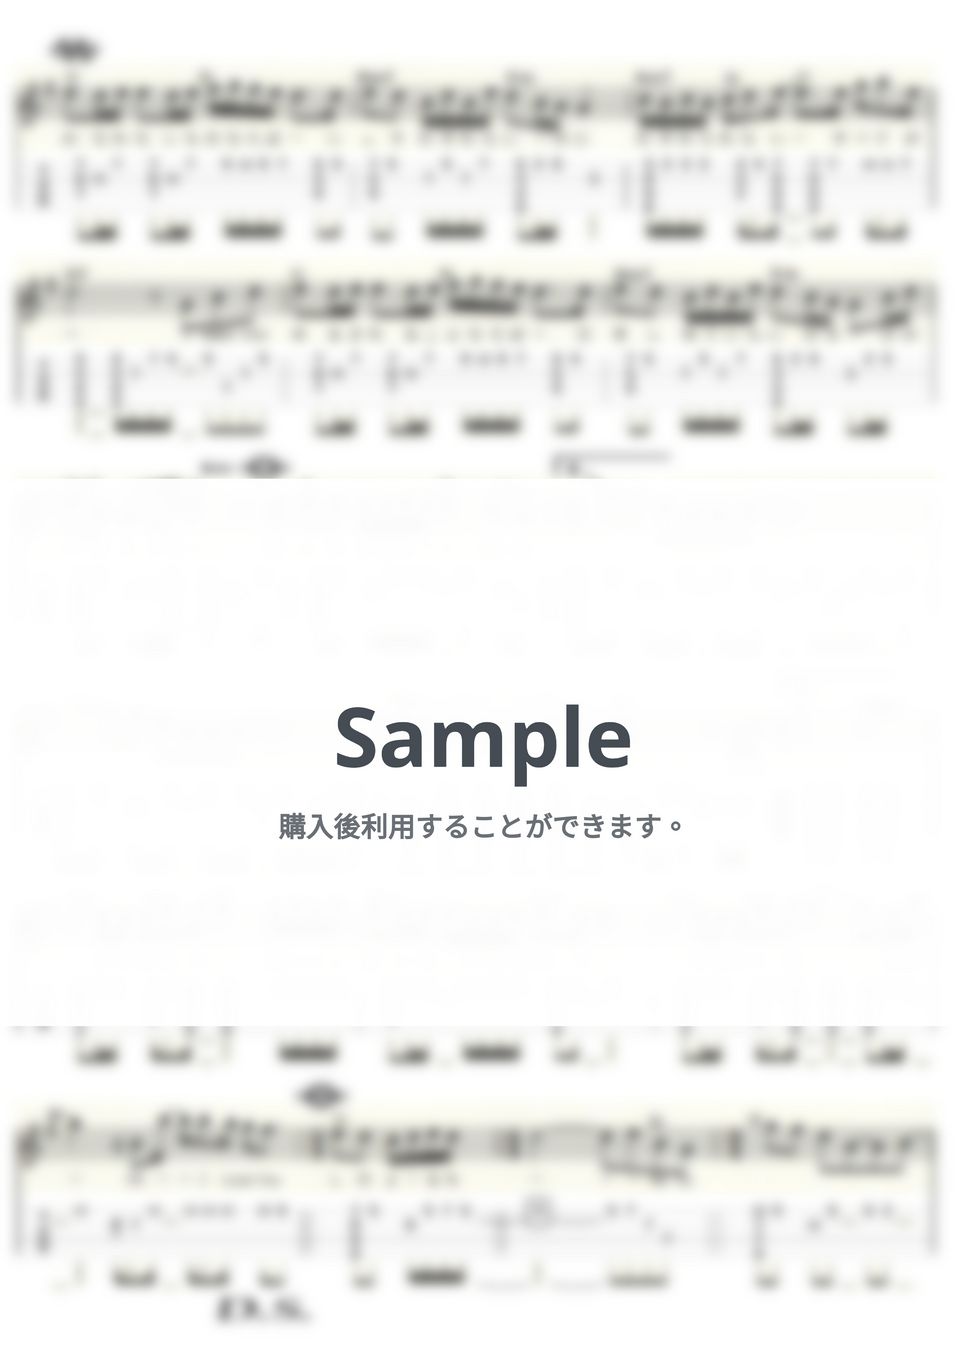 久保田利伸 - Missing (ｳｸﾚﾚｿﾛ / High-G・Low-G / 中級) by ukulelepapa